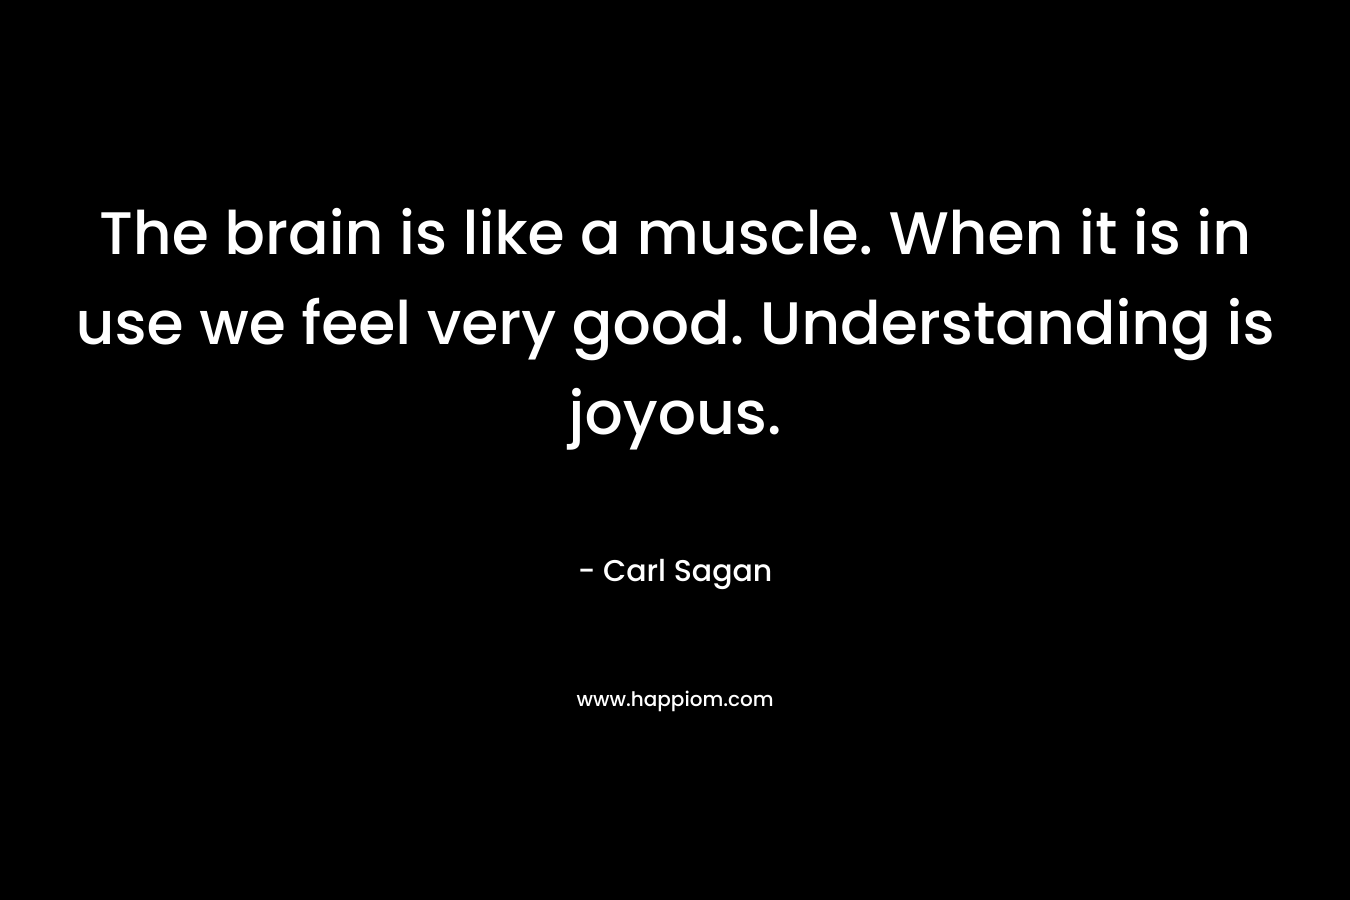 The brain is like a muscle. When it is in use we feel very good. Understanding is joyous.